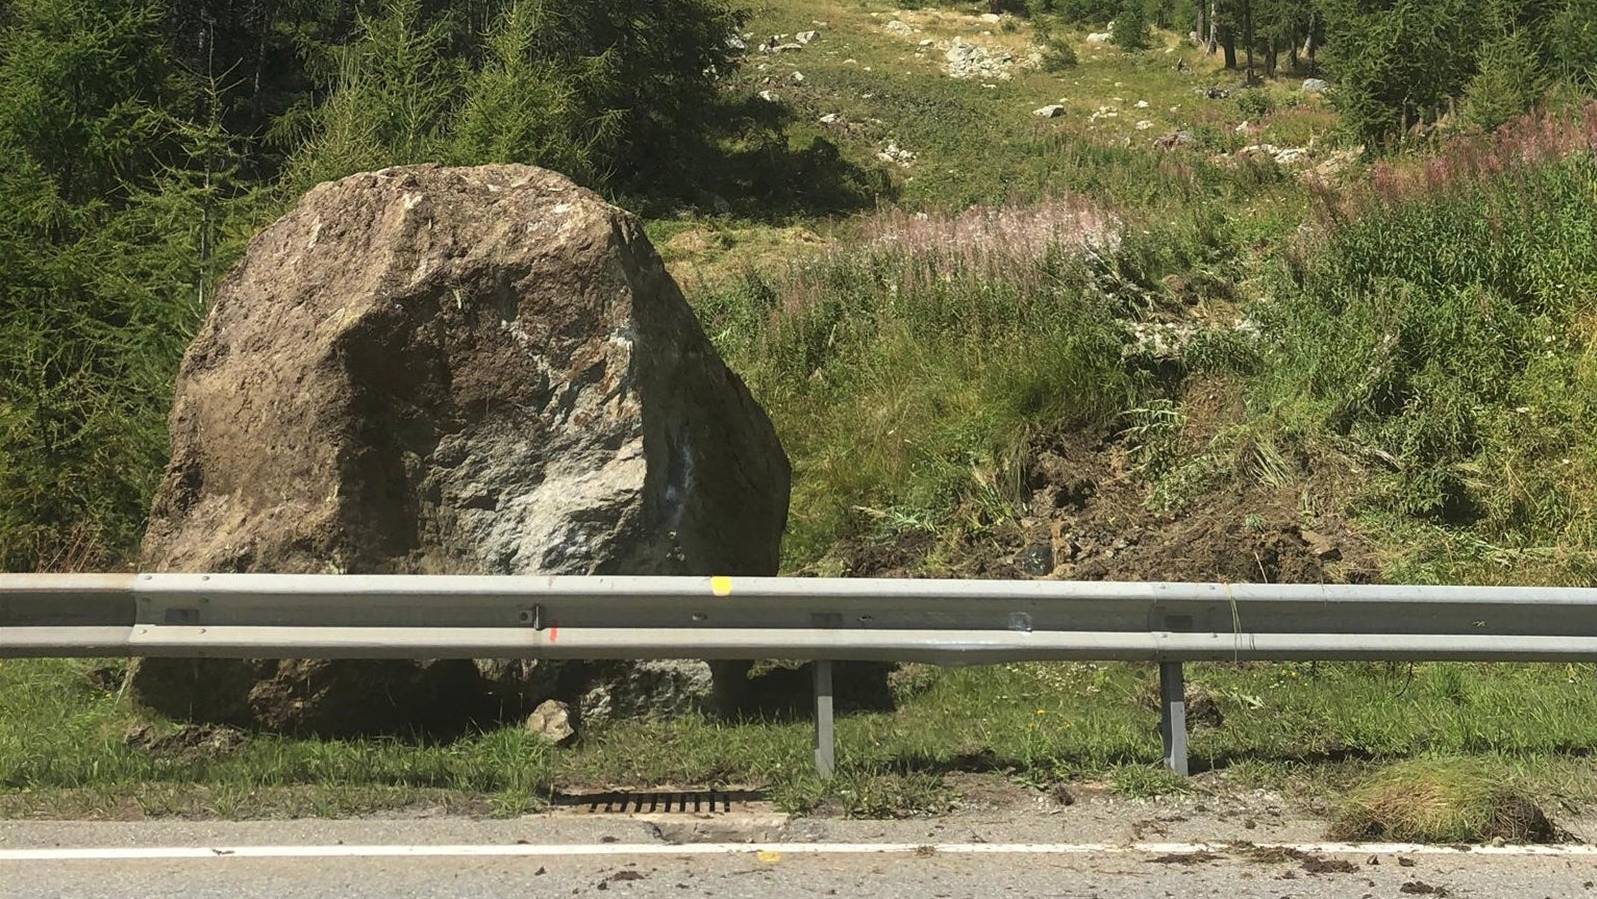 Kam erst vor der Malojastrasse zum Stehen: Einer der riesigen Felsbrocken, die am Dienstag im Engadin vom Piz Lagrev niedergingen.